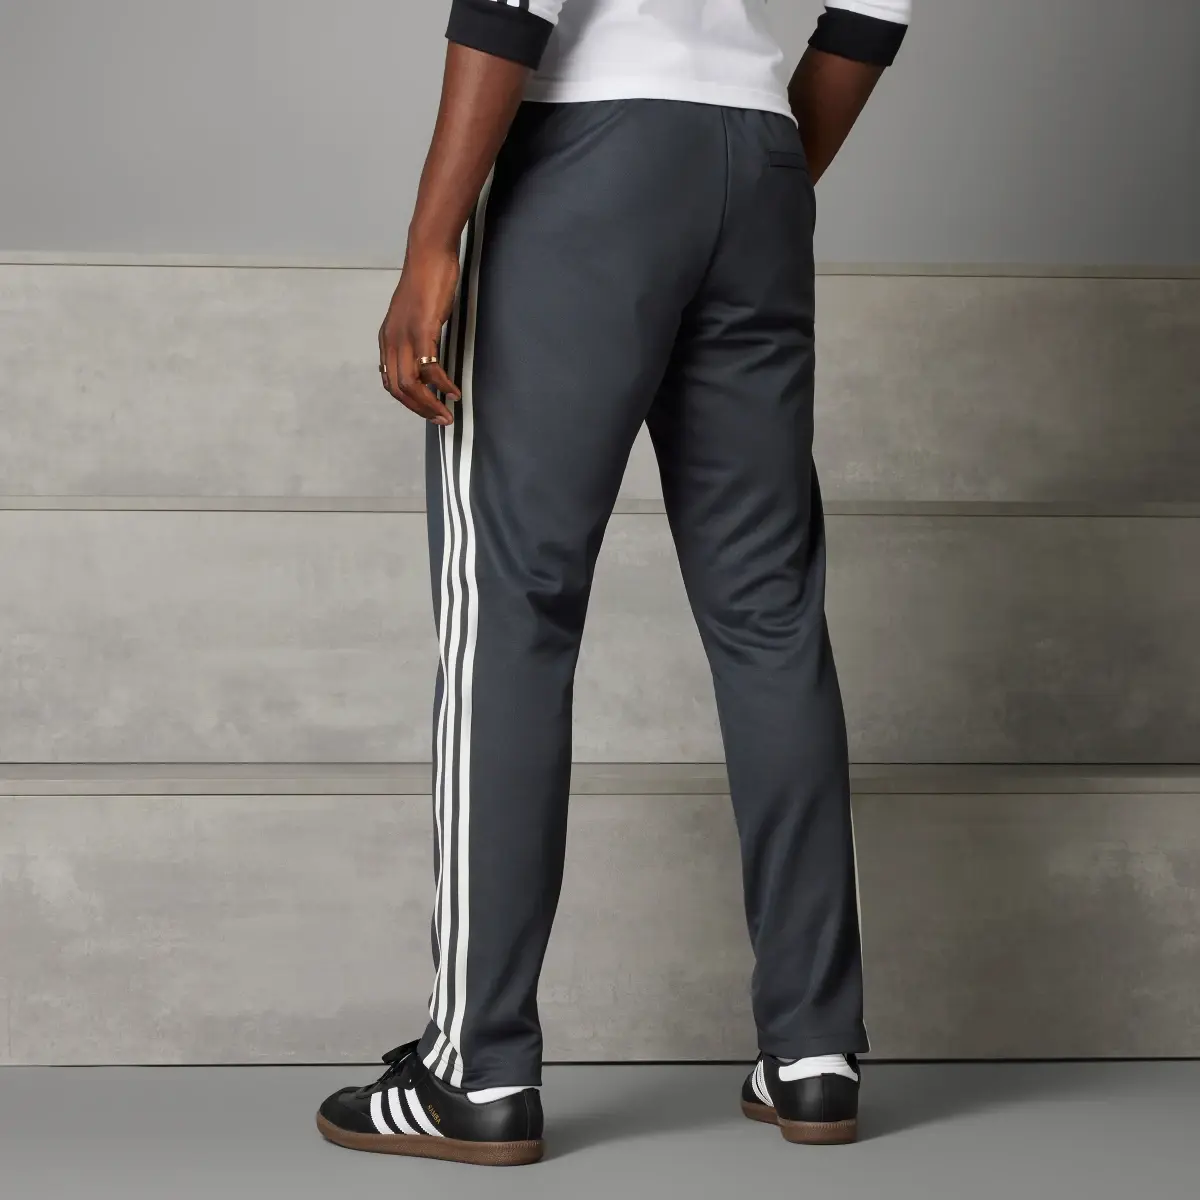 Adidas Pantalon de survêtement Allemagne Beckenbauer. 2